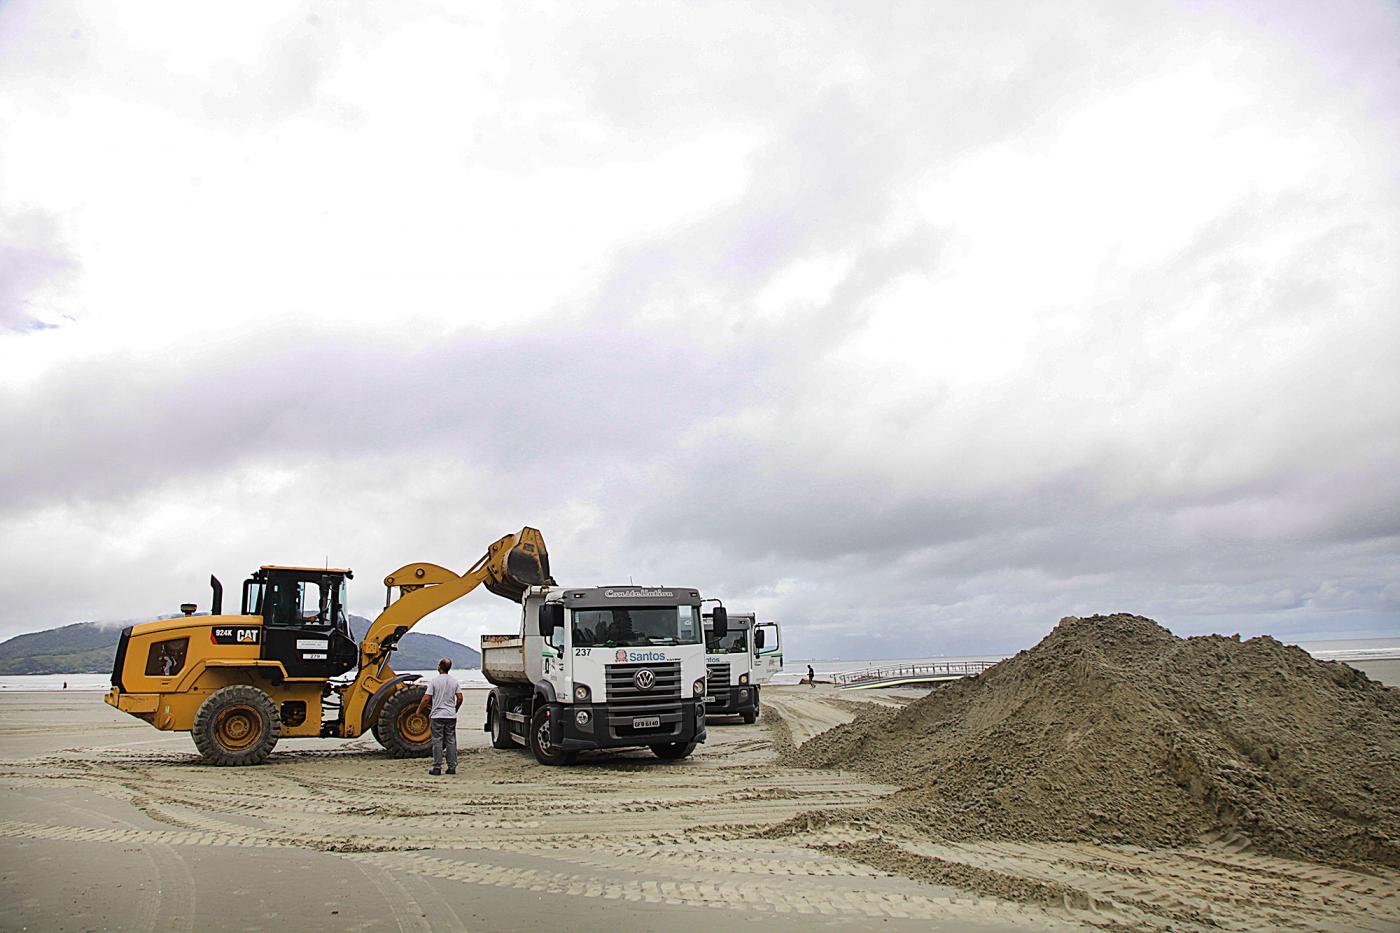 Escavadeira está depositando areia em caminhão. Os dois veículos estão na areia da praia. Ao lado direito da imagem há um monte de areia. #Paratodosverem.